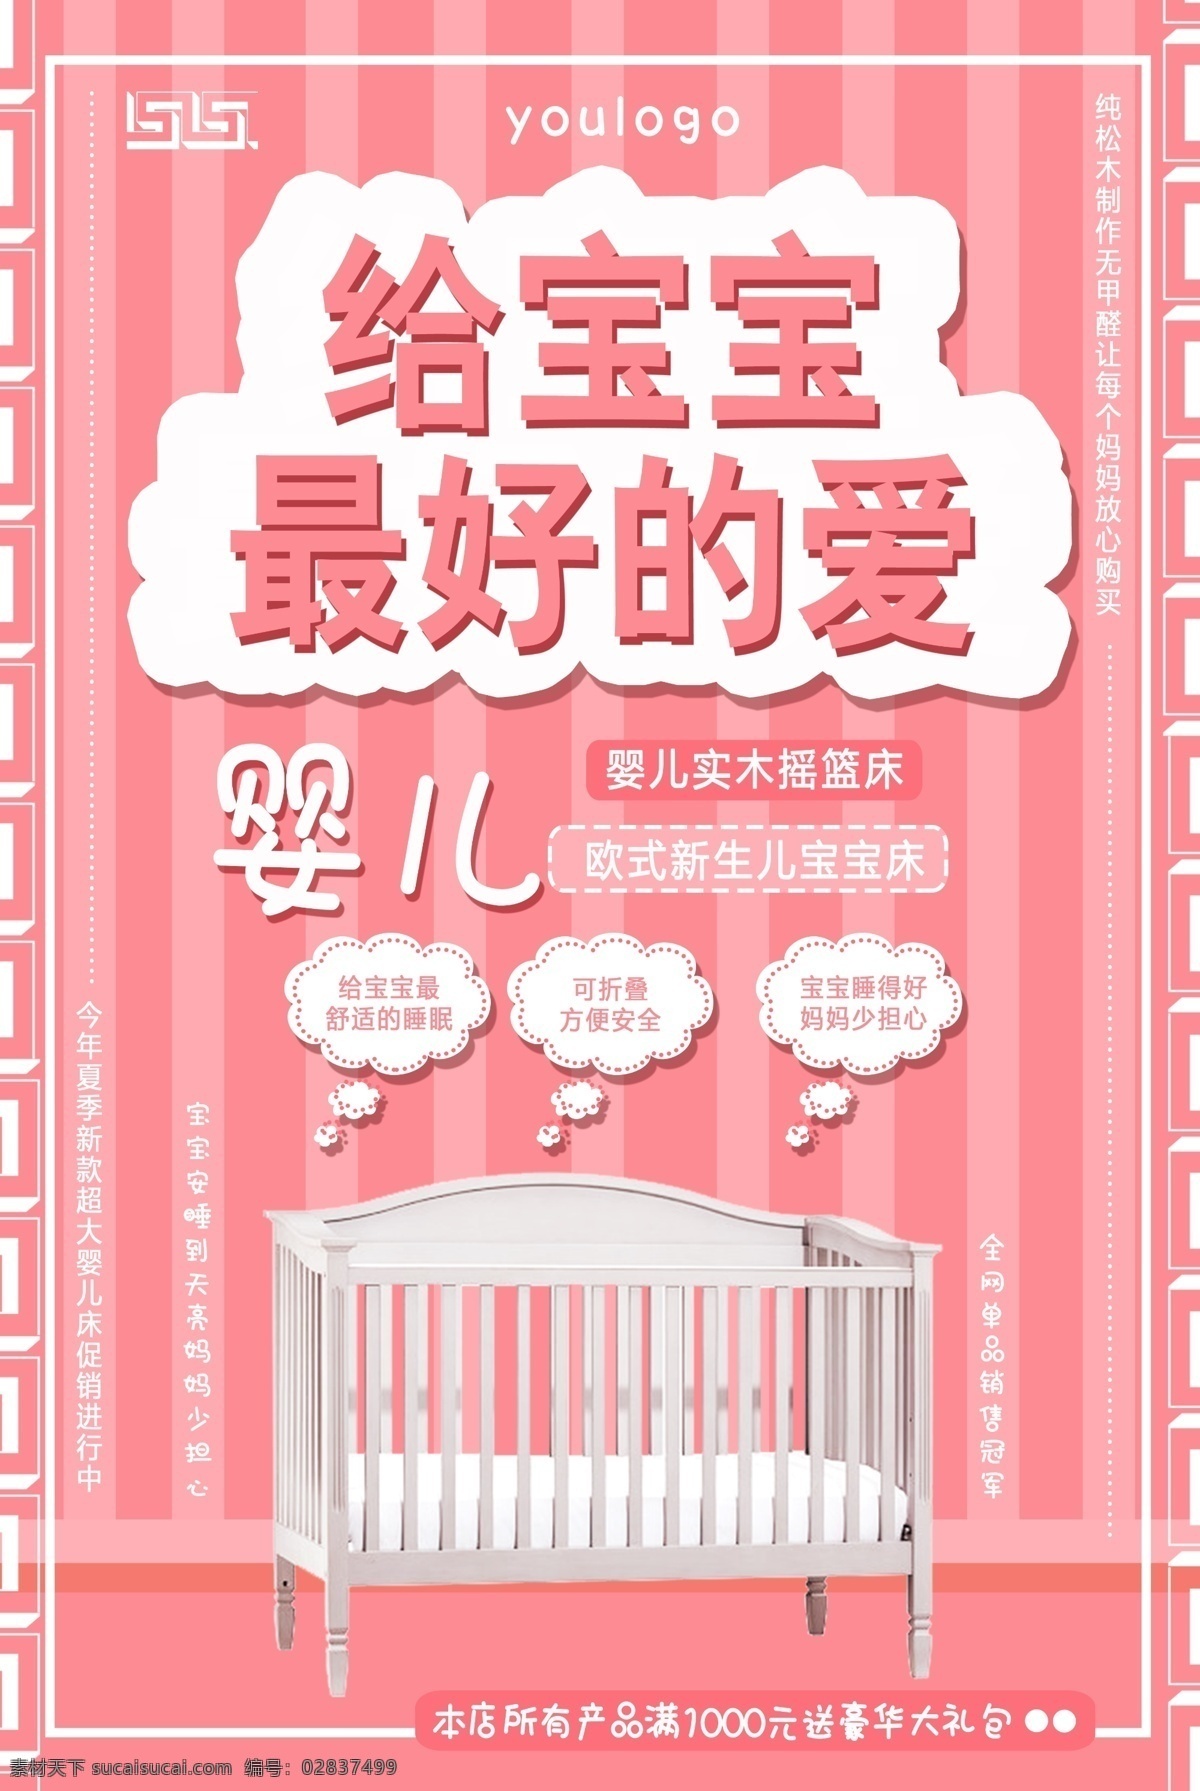 欧式 婴儿床 促销 海报 婴儿床特价 婴儿床上新 宝贝床 宝宝床 新生儿床 欧式婴儿床